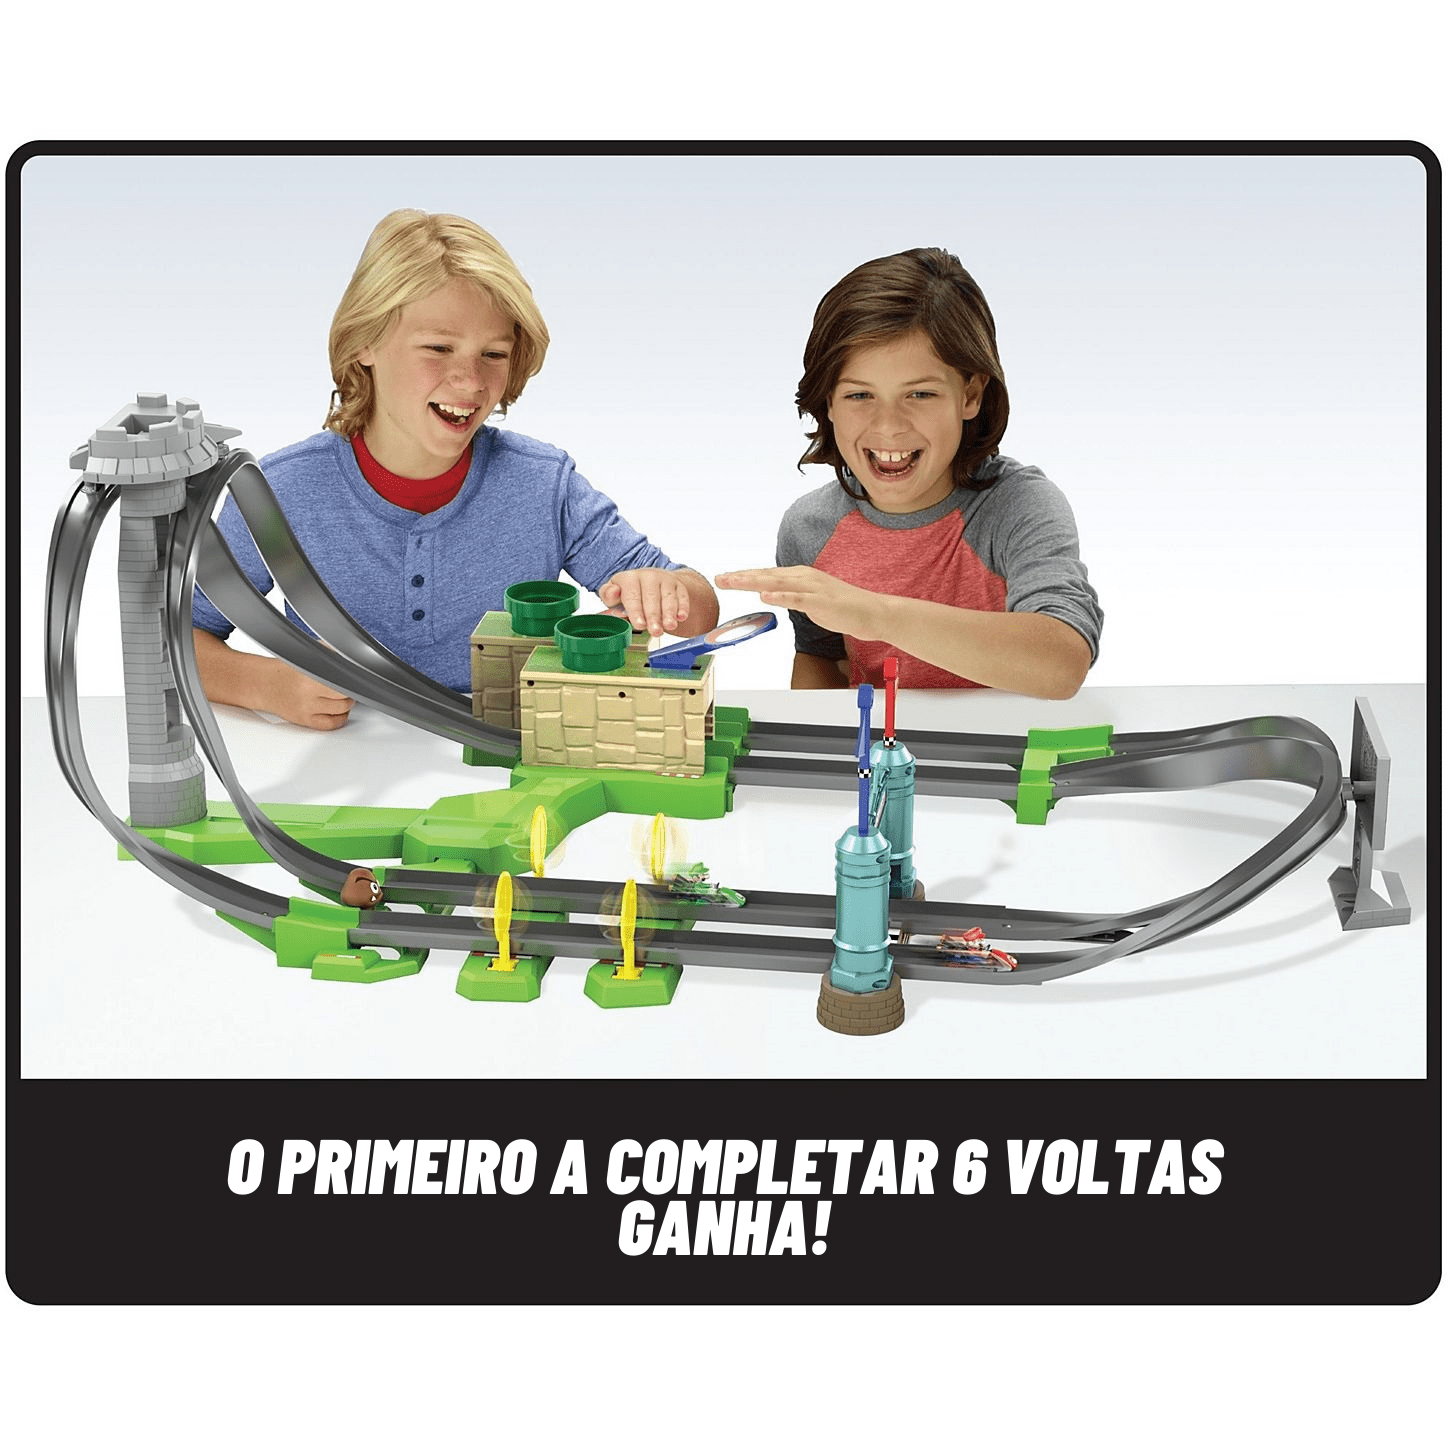 Conjunto Mini Circuito de Corrida Mariokart Hot Wheels Mattel